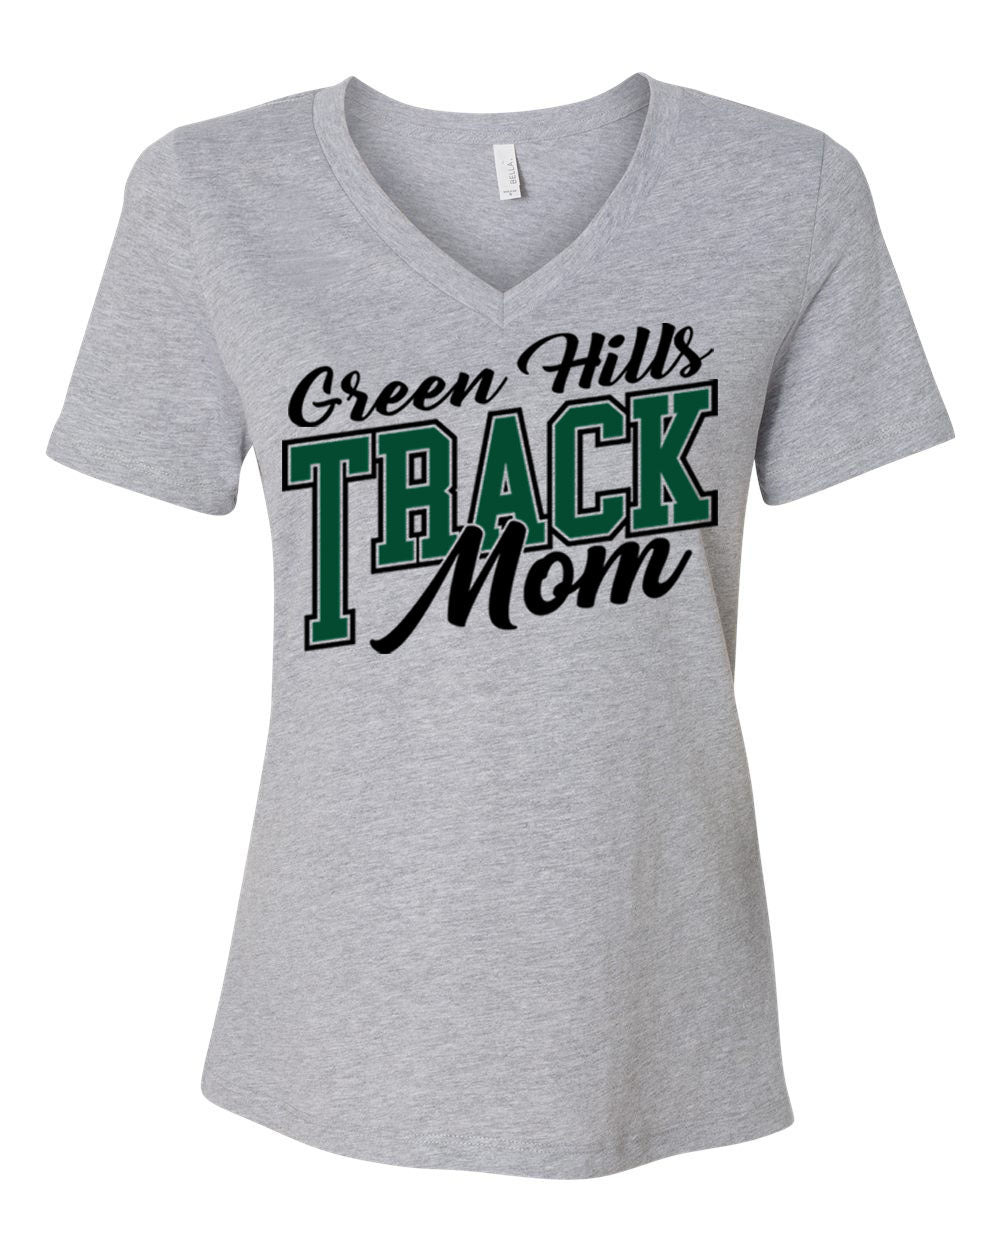 Green Hills Track Design 5 V-neck T-shirt